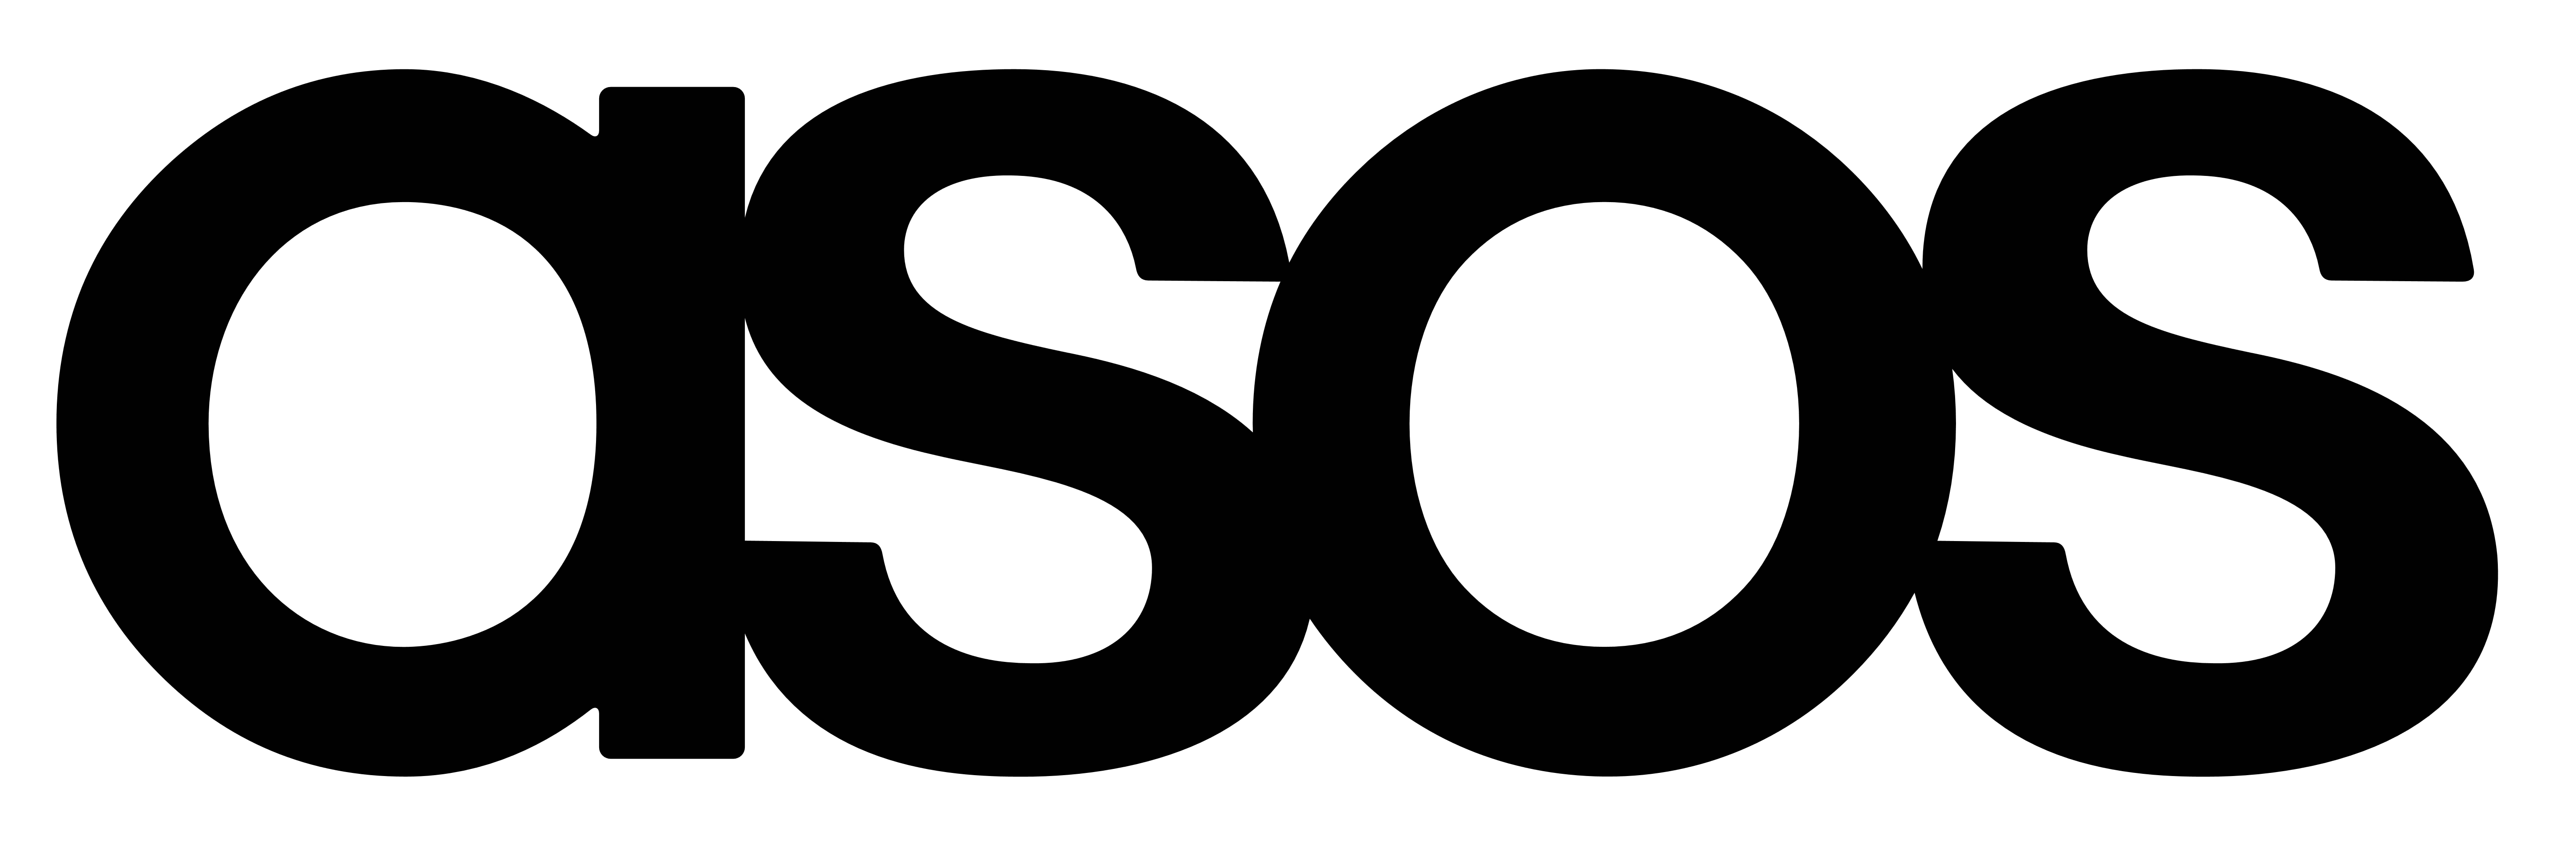 Asos.com Logo - Asos.com Voucher and Promo Codes August 2019